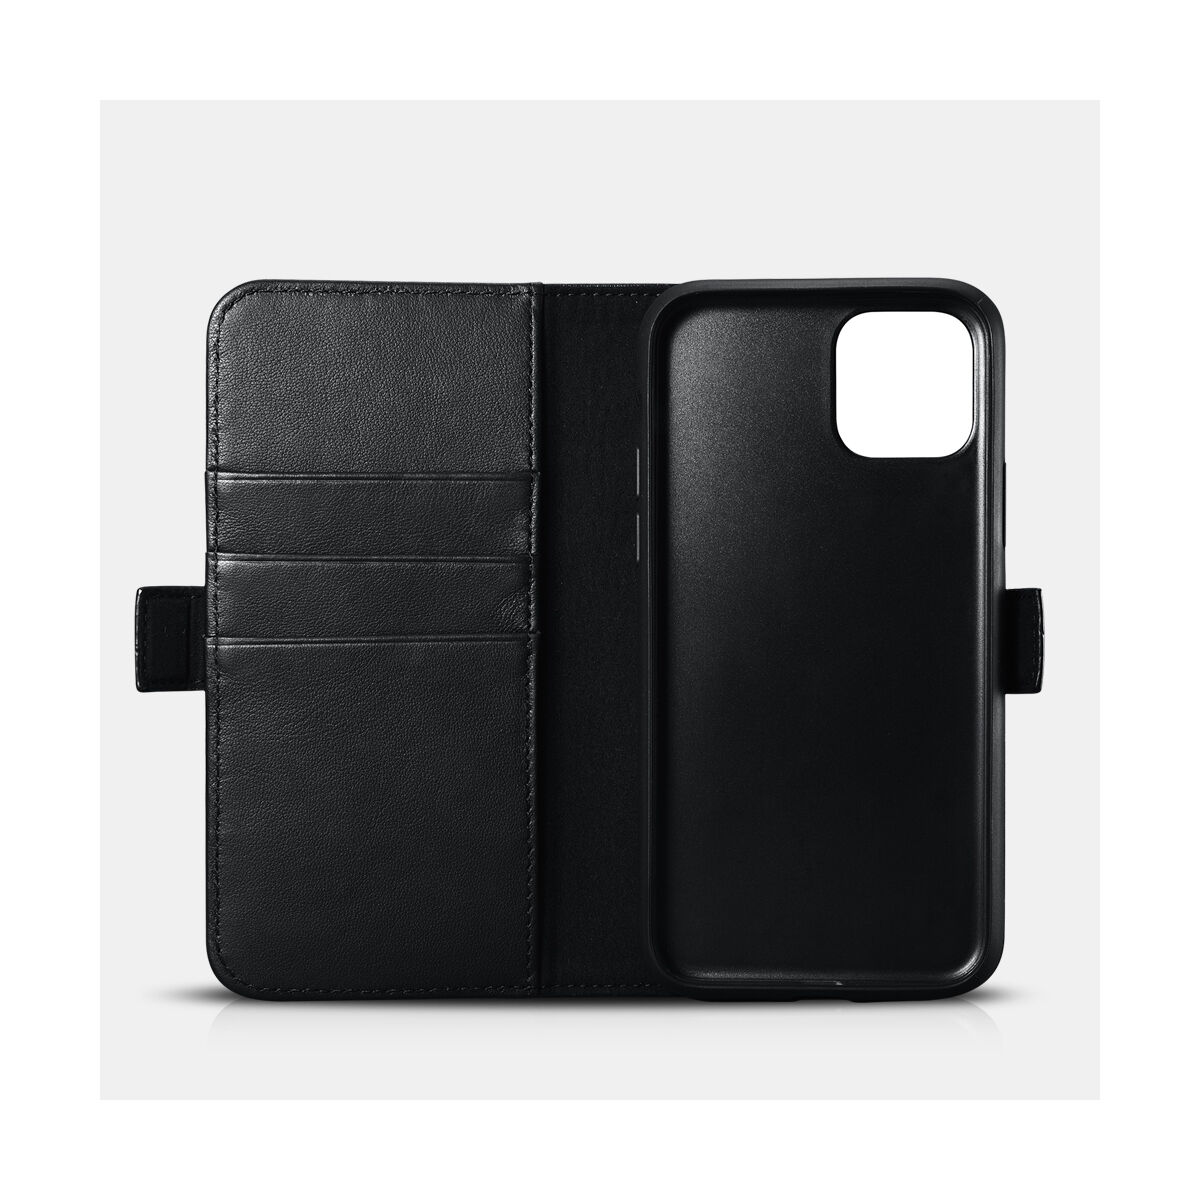 Kép 2/2 - iCarer iPhone 11 Pro Max tok, Nappa Bőr Levehető 2-in-1 pénztárcatok, levehető kártyatartóval, fekete